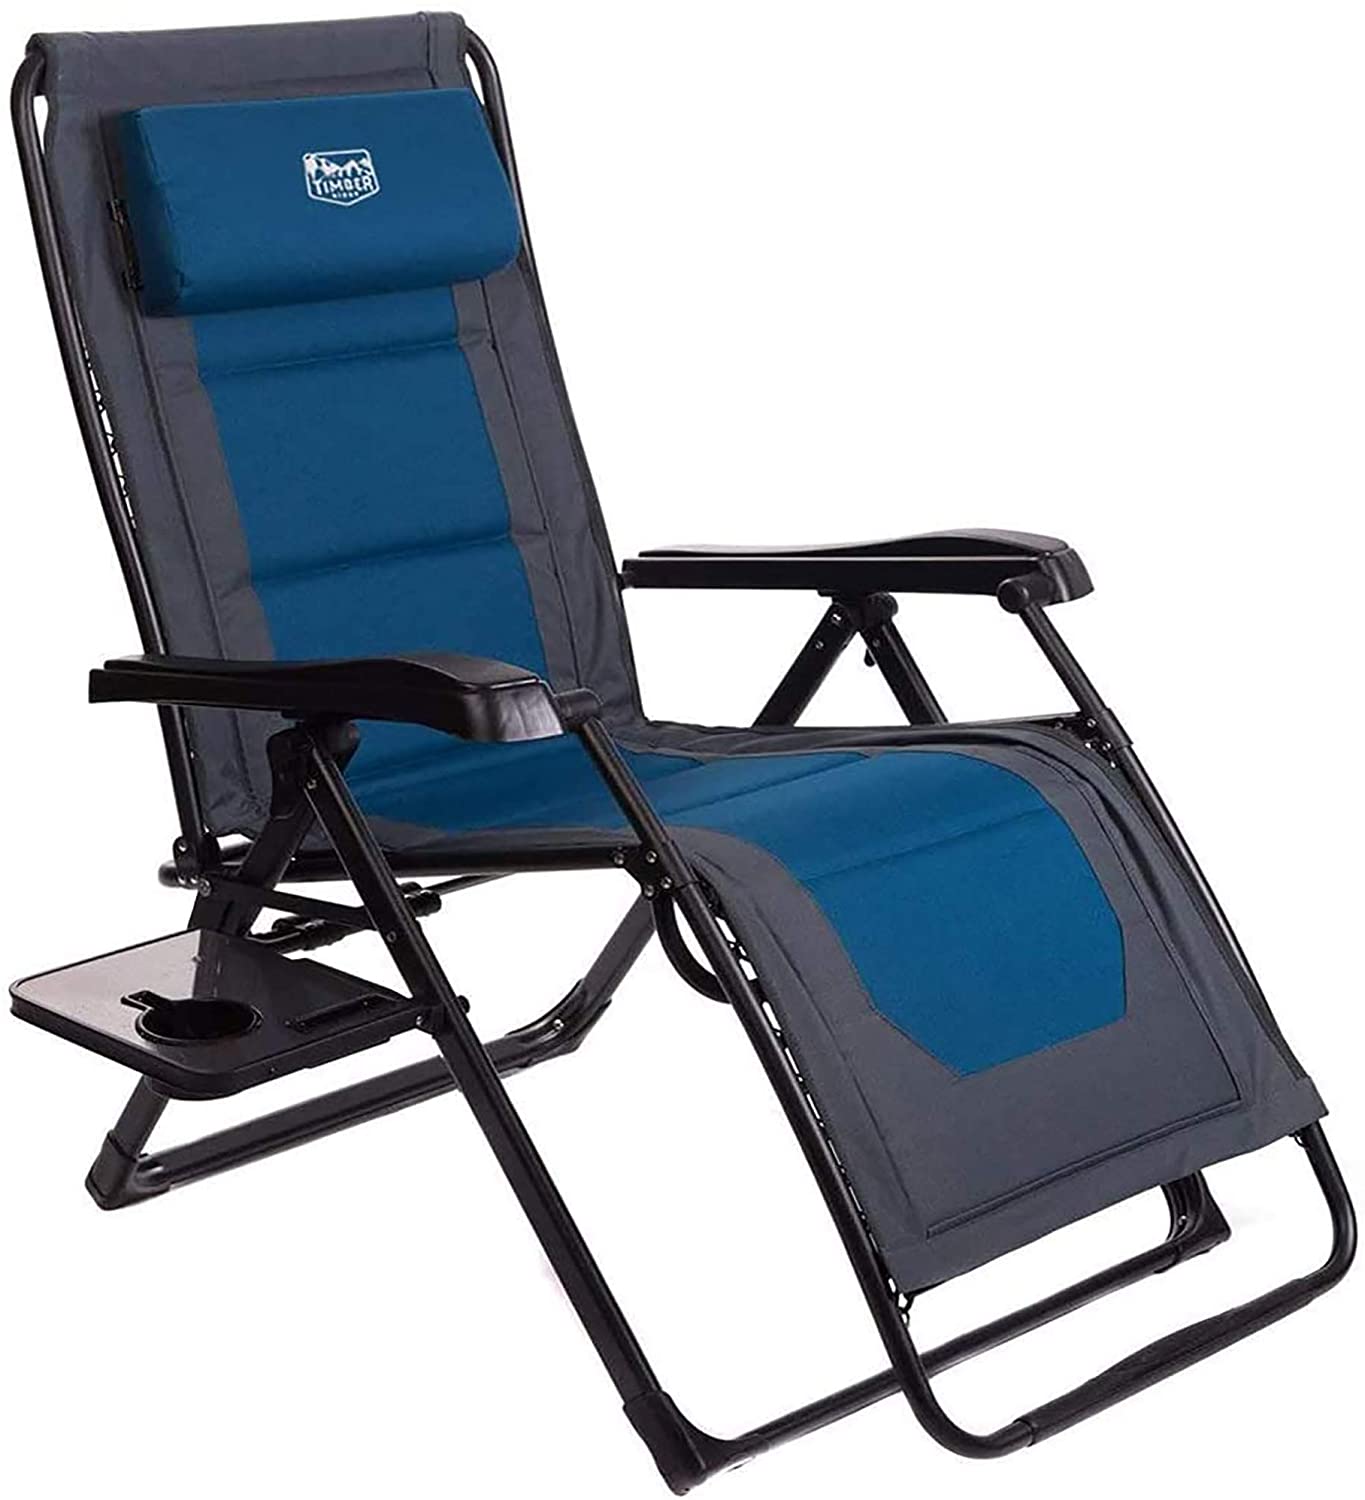 Best Lawn Chair For Elderly